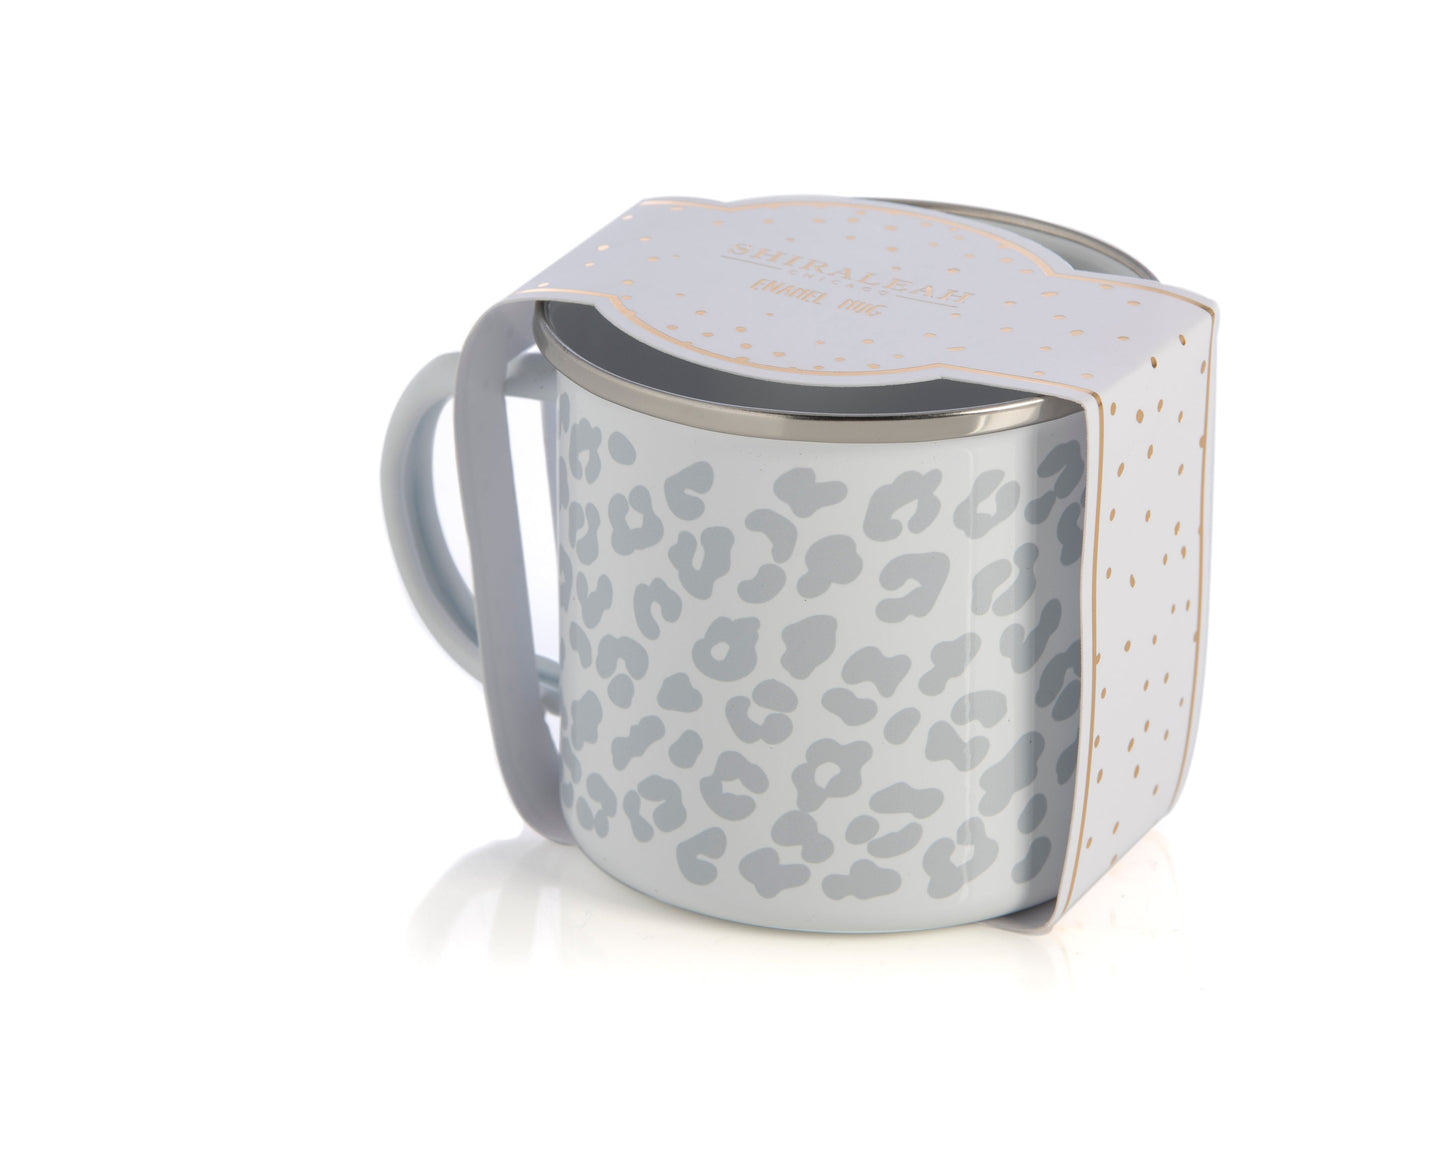 Leopard Print Enamel Mug, Grey